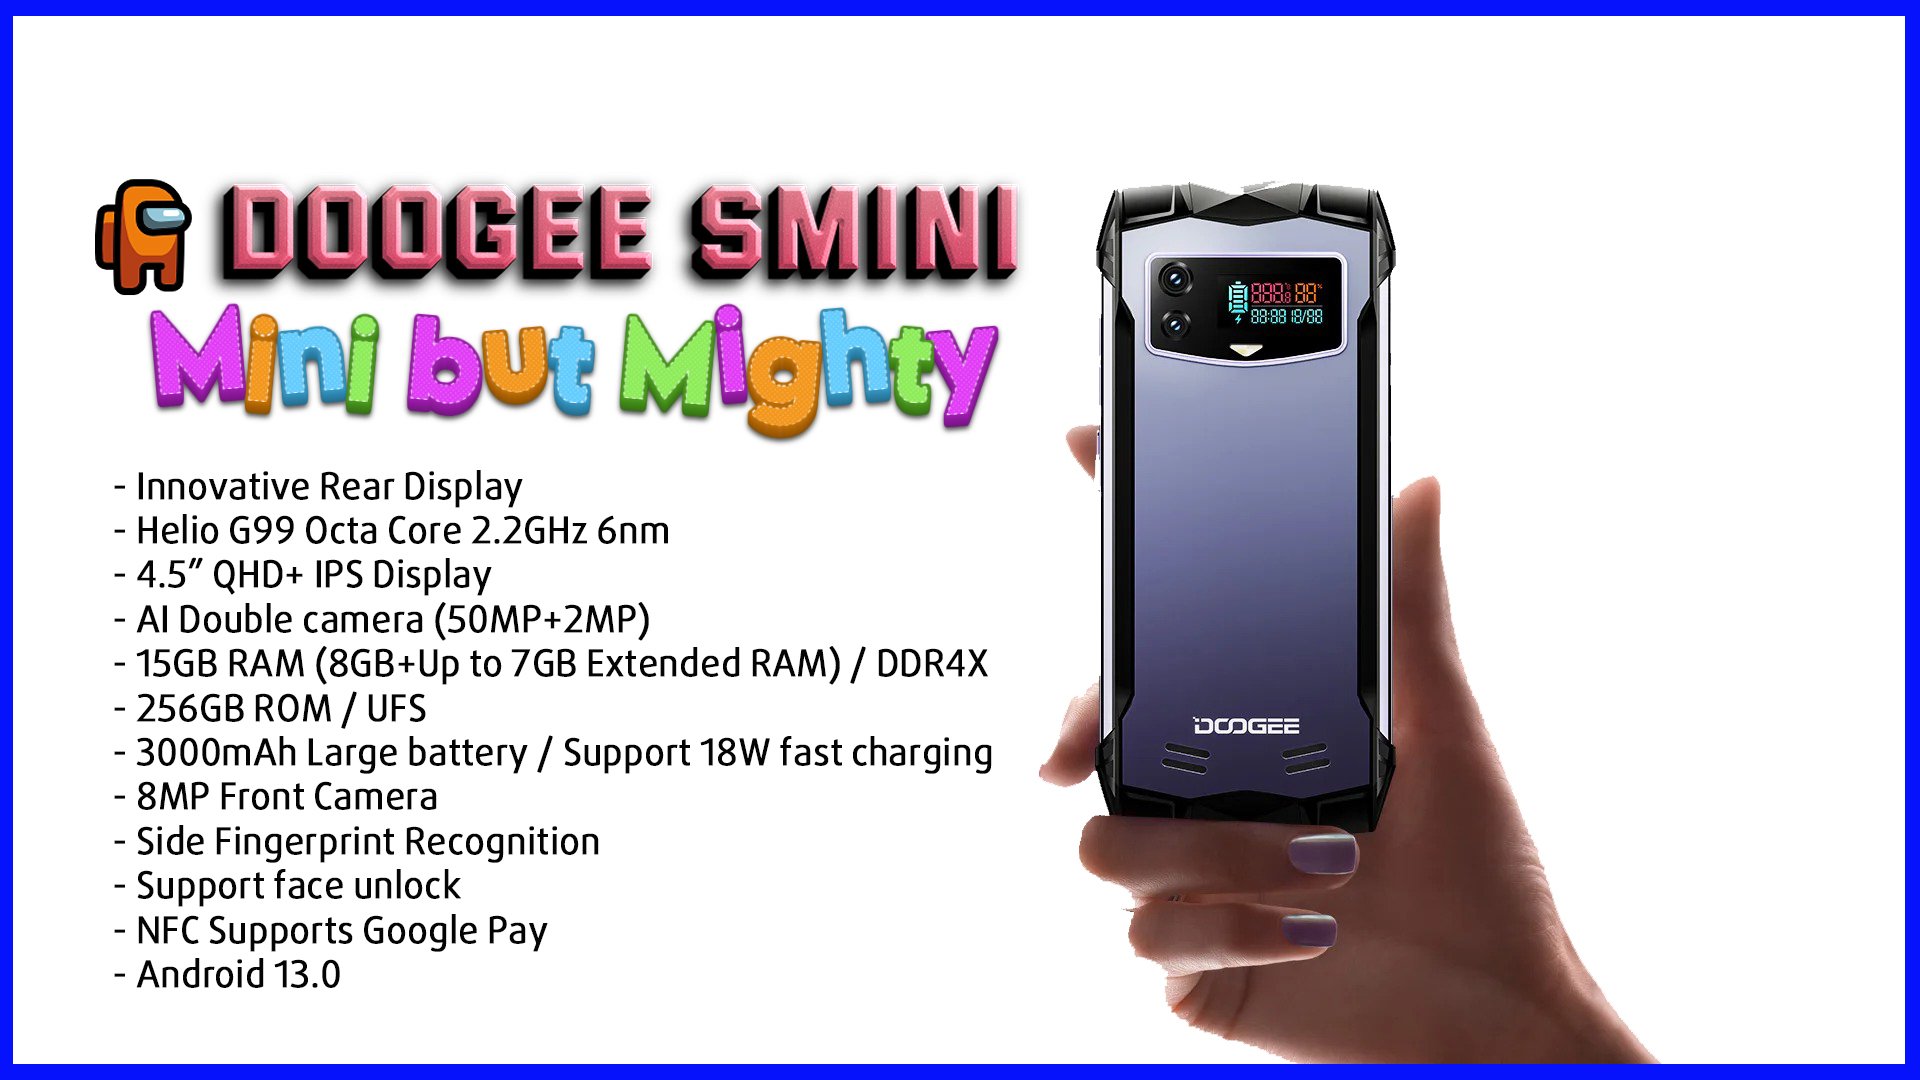 Doogee Smini-Saigonphone.com